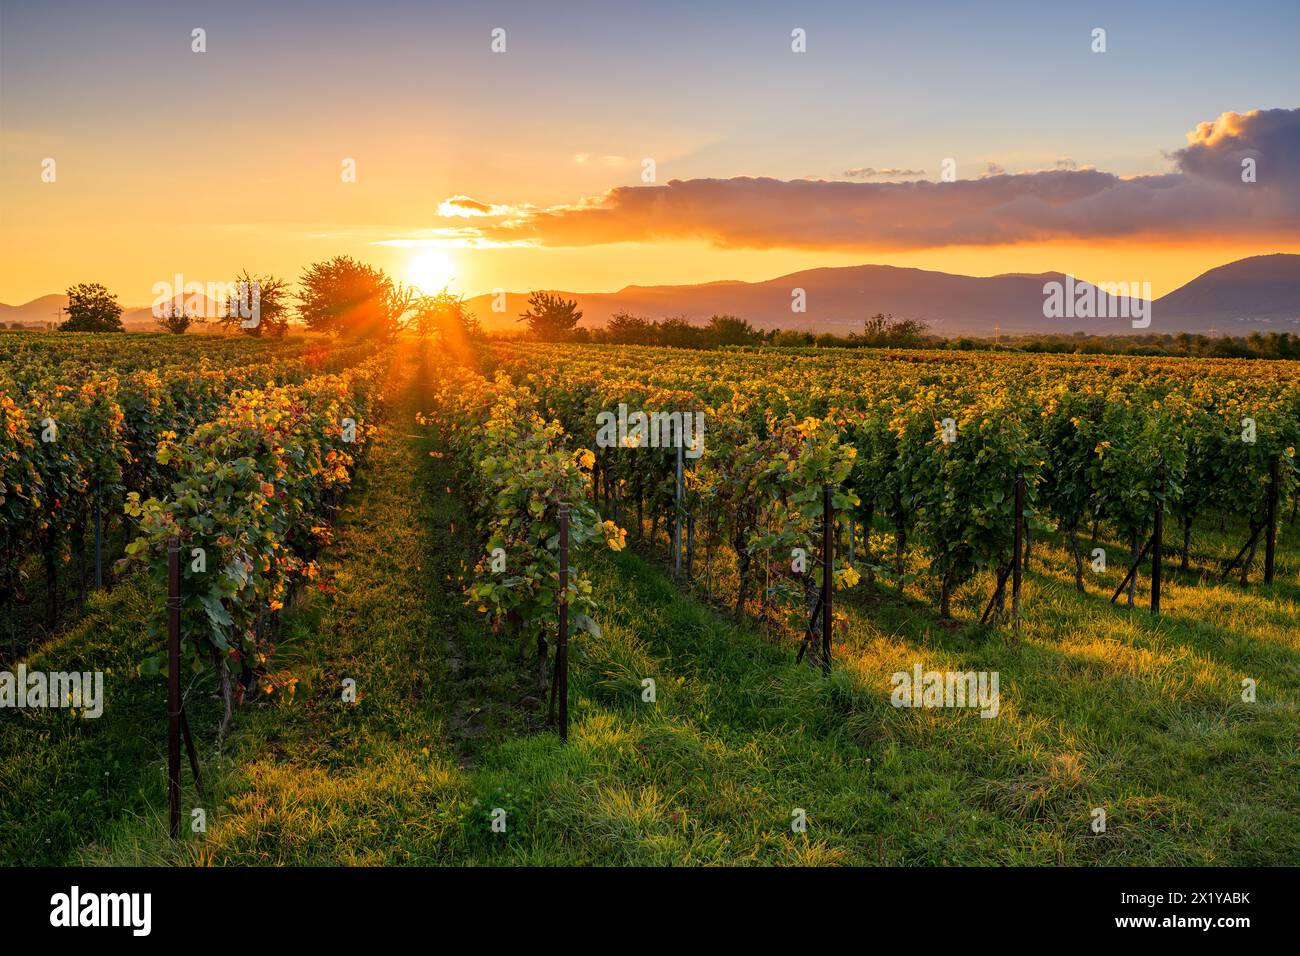 Vineyards at sunset, Essingen, Palatinate Forest, Rhineland-Palatinate, Germany Stock Photo